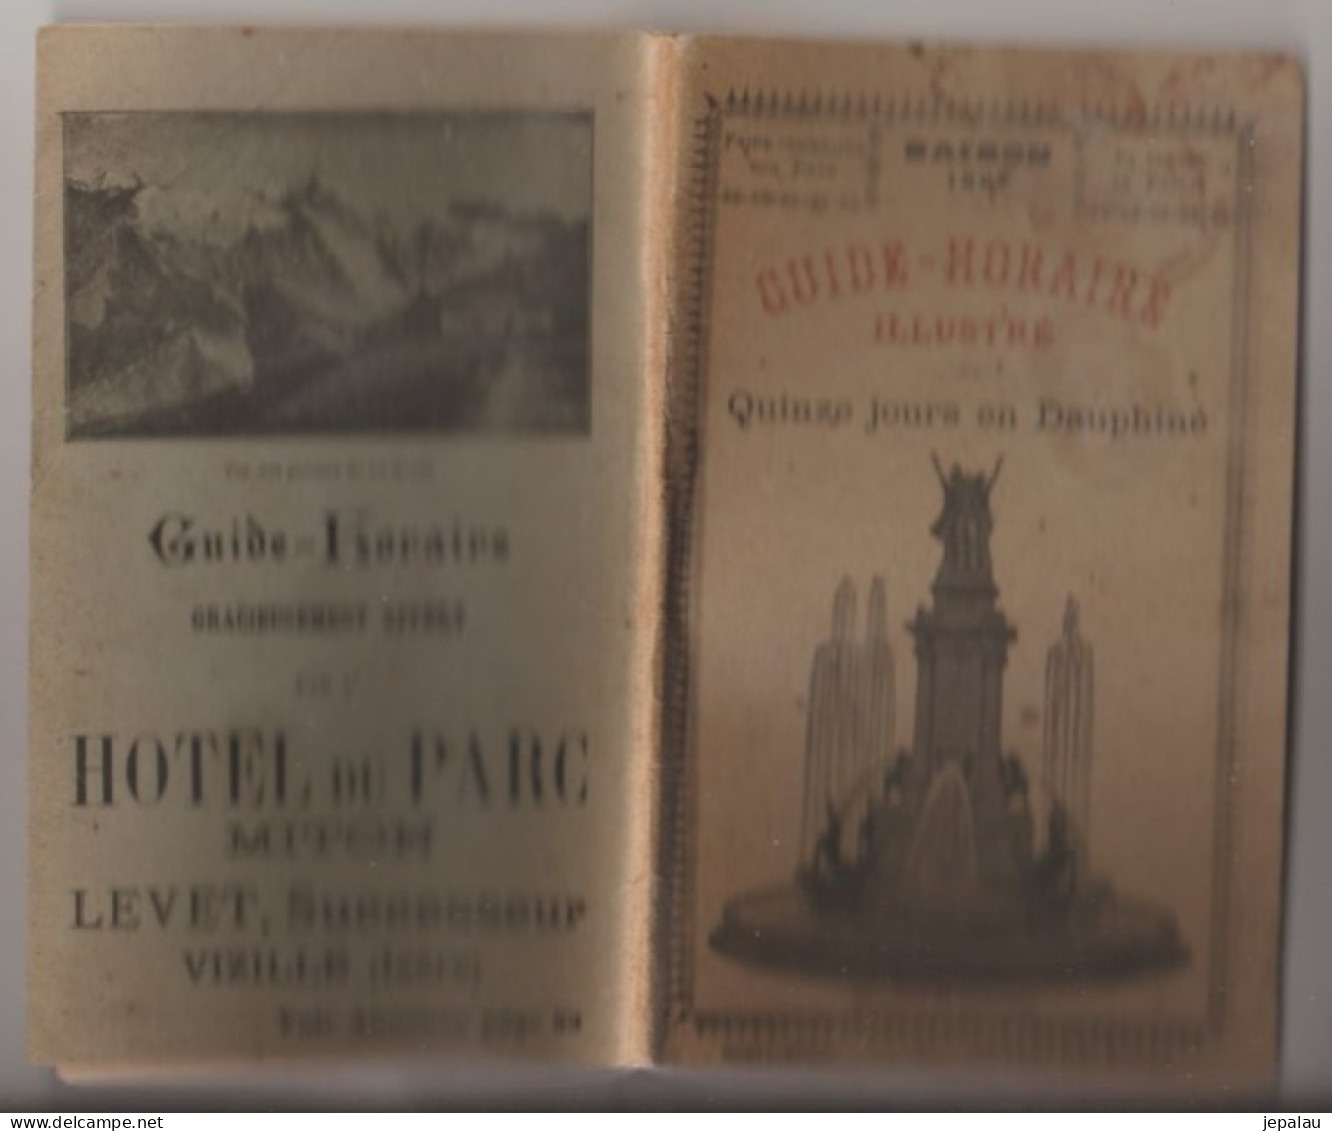 Guide Horaire Illustré / Quinze Jours En Dauphiné (1897) - People